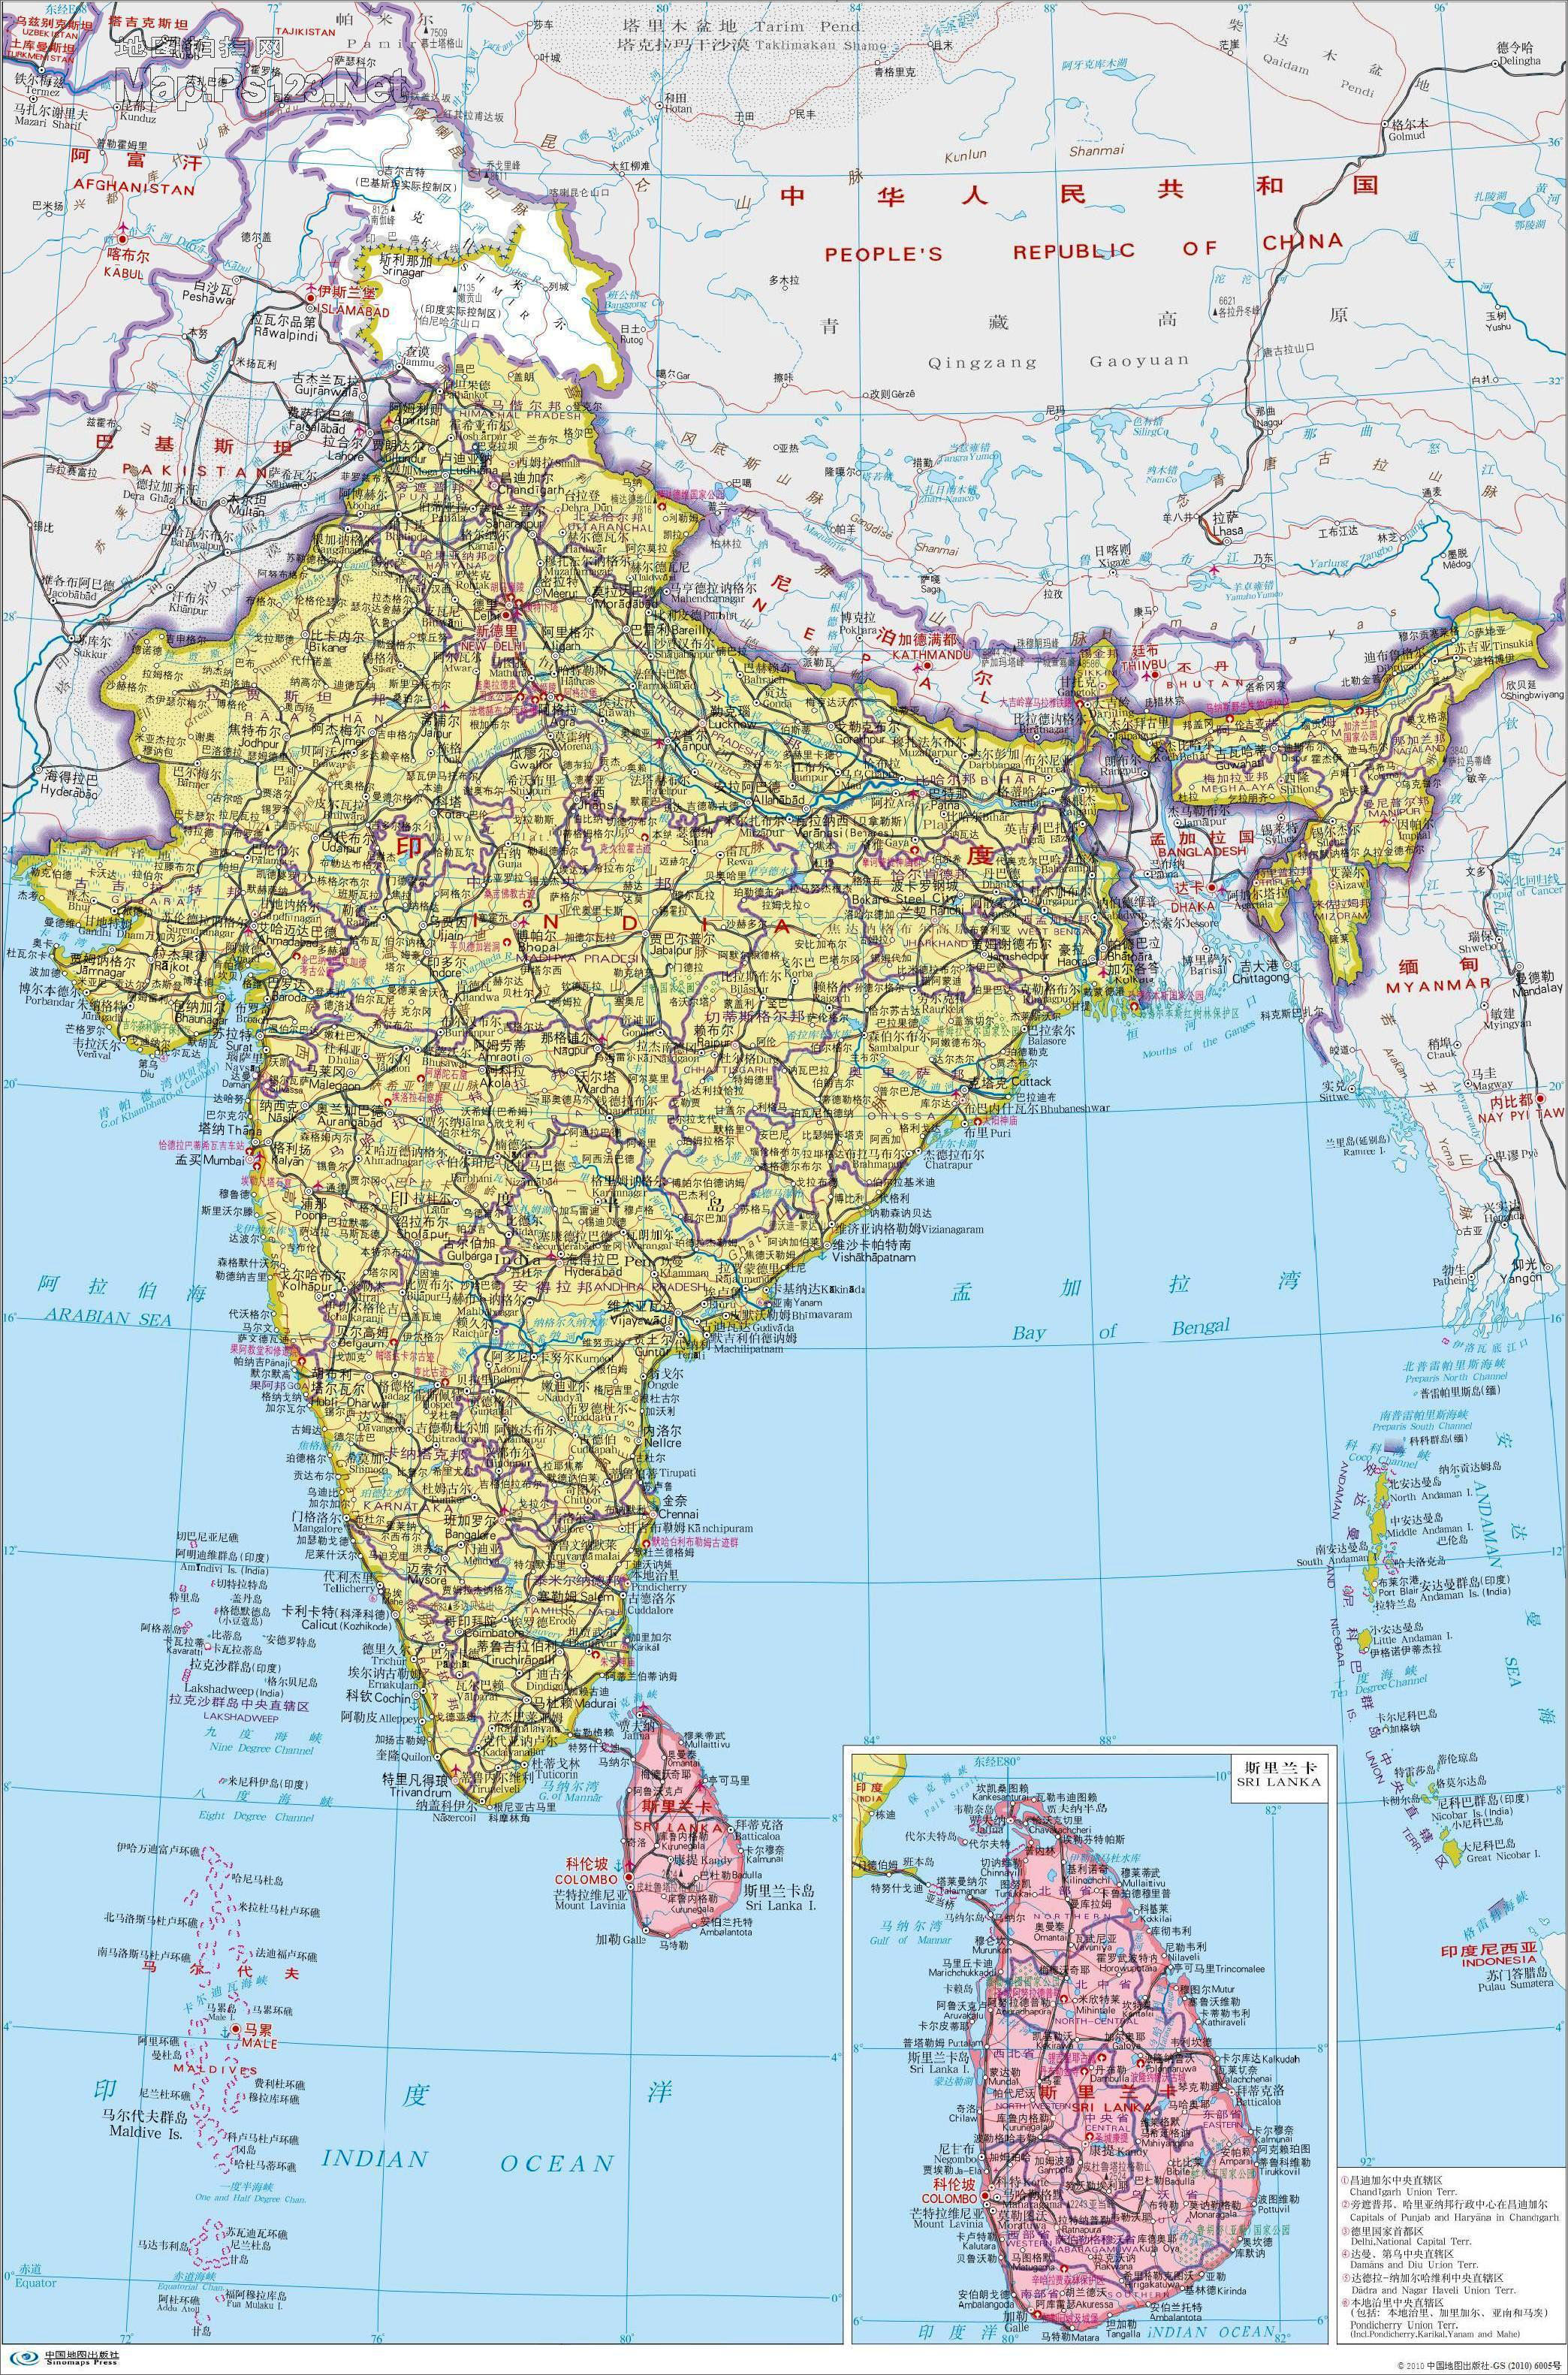 尼泊尔面积 平方公里图片